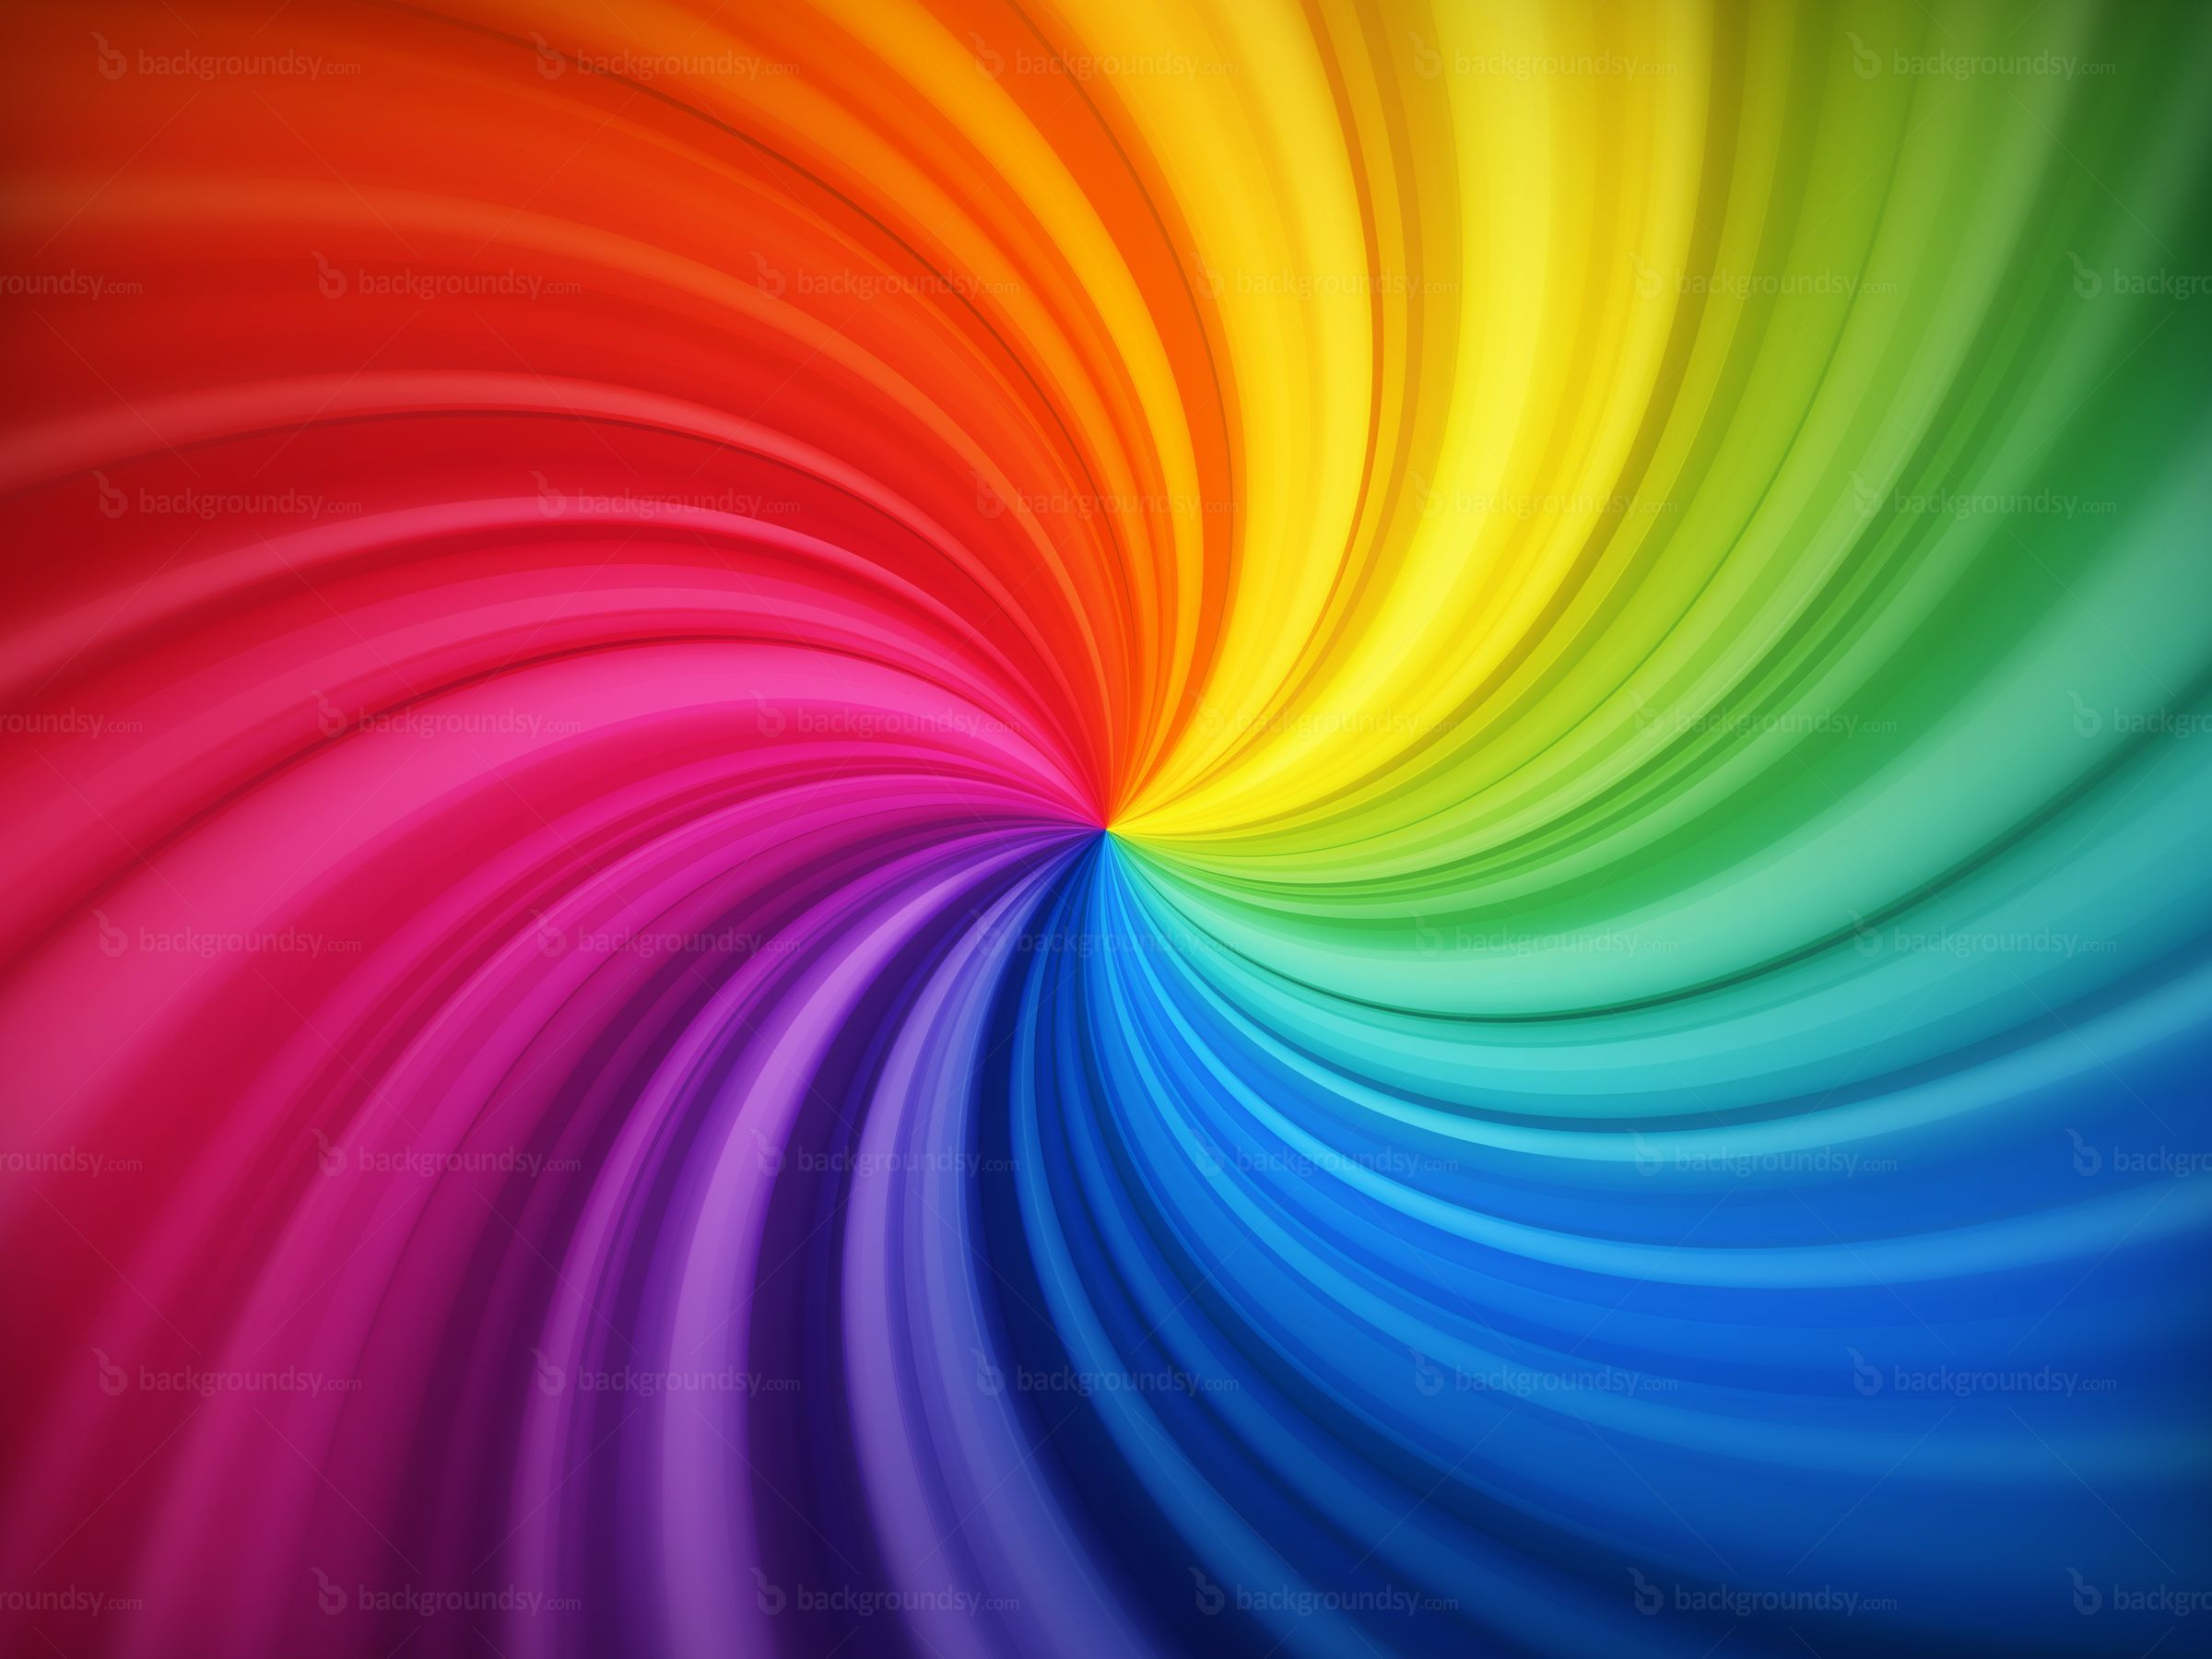 2400x1800 Desktop Rainbow Wallpaper